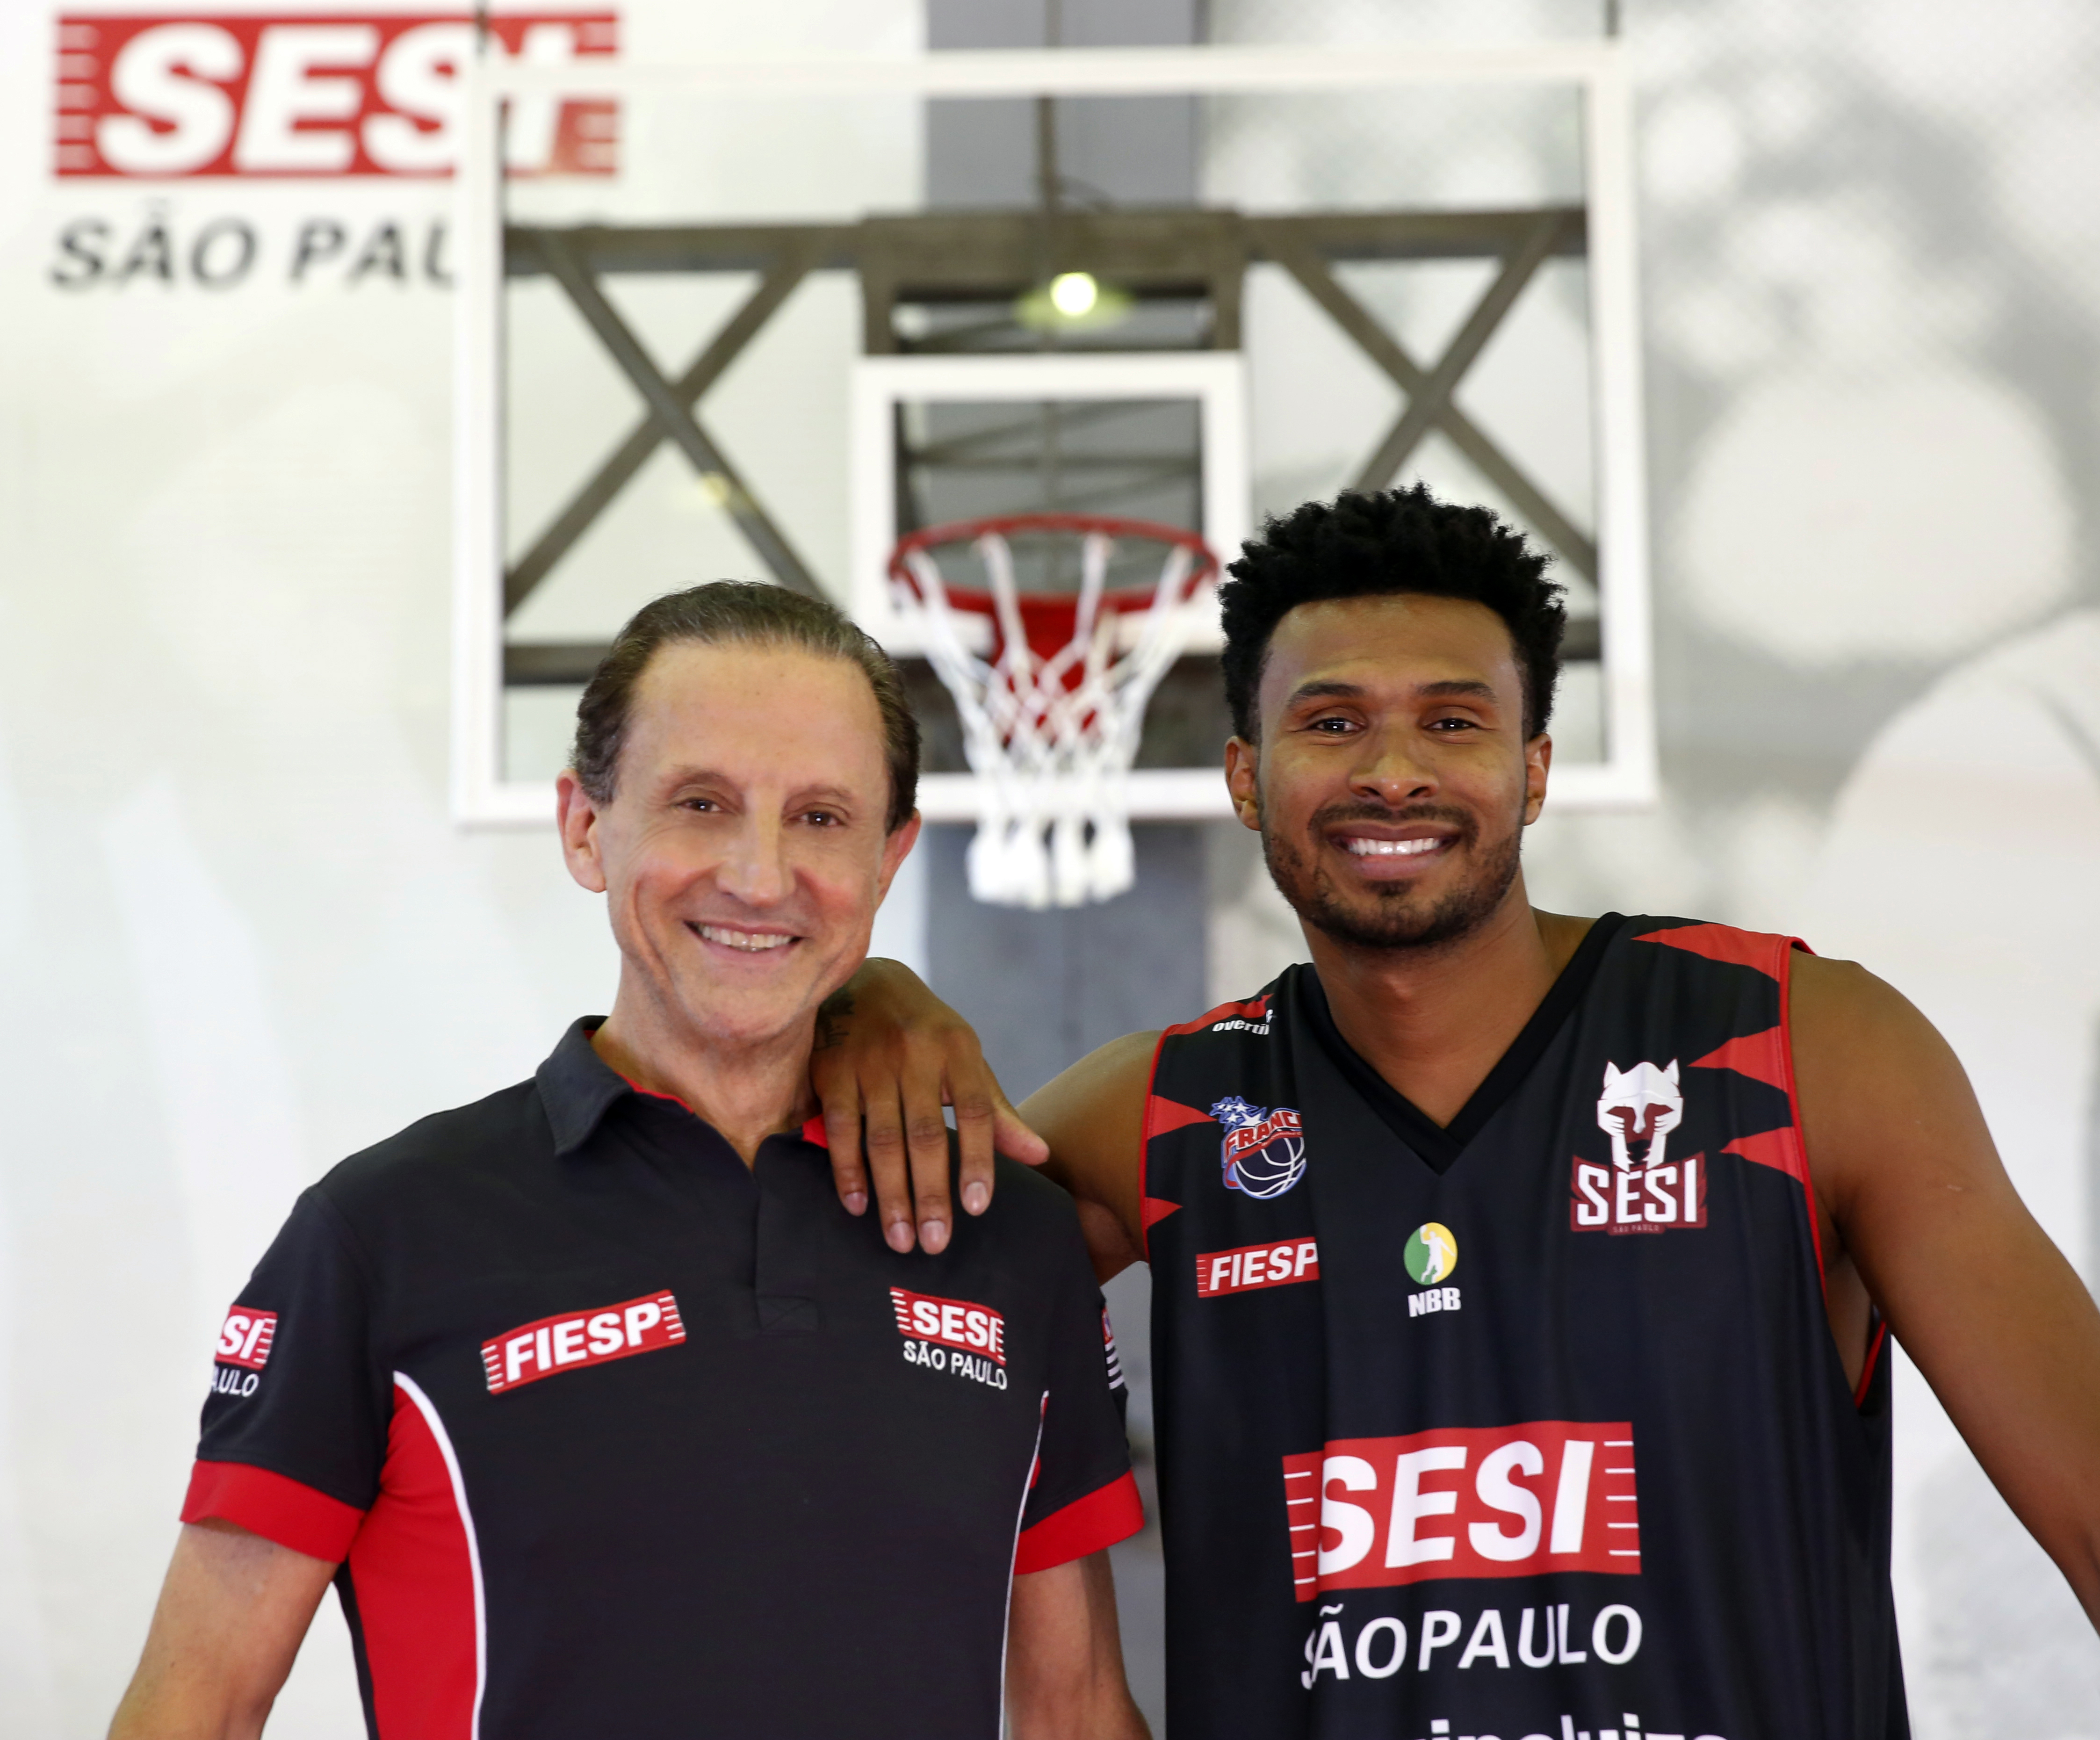 O presidente do Sesi-SP e Fiesp, Paulo Skaf ao lado do atleta Leandrinho (Foto: Ayrton Vignola/Fiesp)